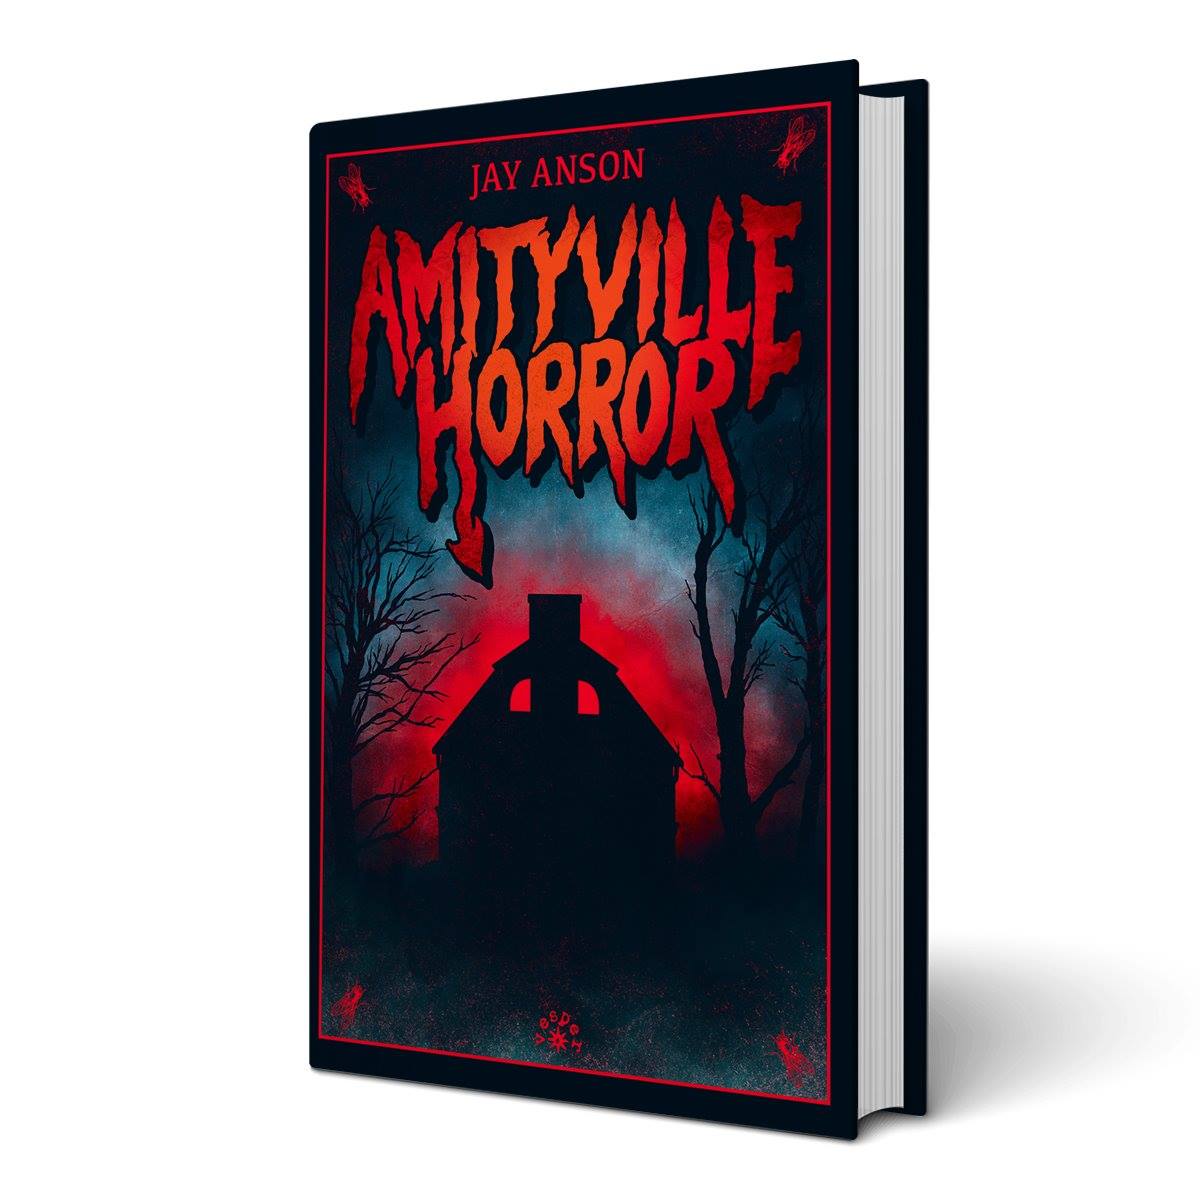 Wydawnictwo Vesper zapowiada wydanie książki „Amityville Horror”. A zapowiada to tak: